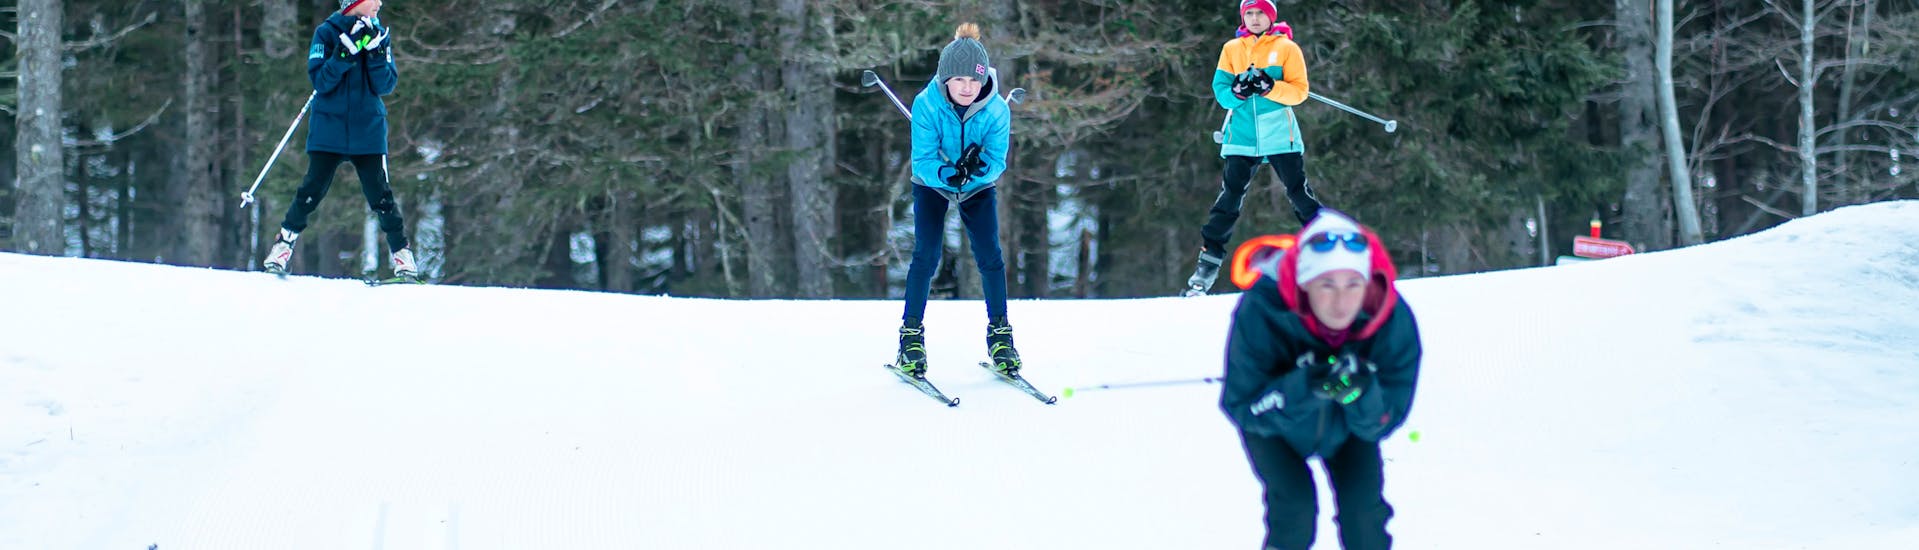 Clases particulares de esquí de fondo para todos los niveles.